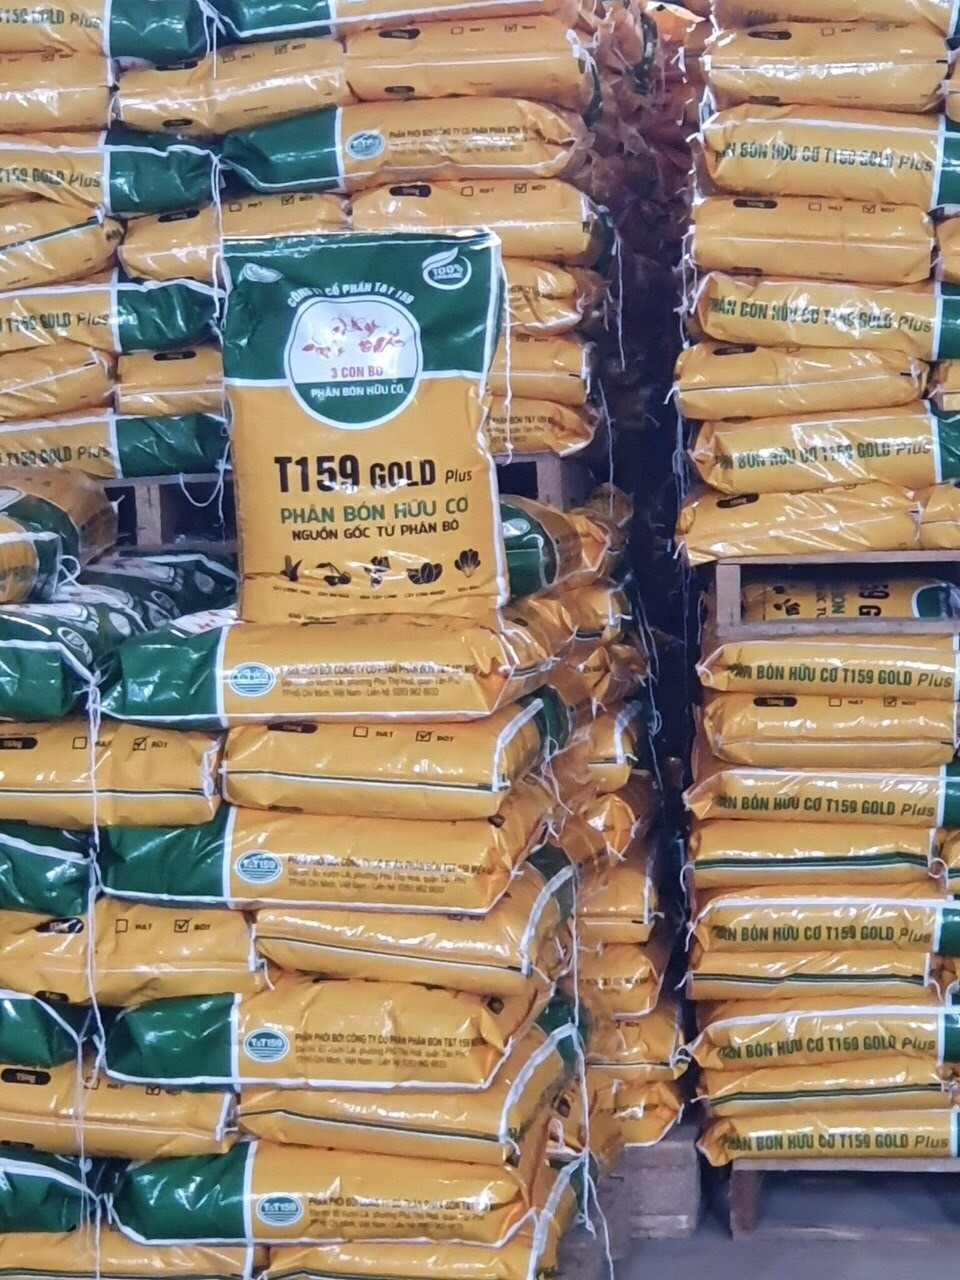 Chủ tịch HĐQT Asanzo: Phân bón hữu cơ là chìa khoá tăng chất lượng nông sản - 5